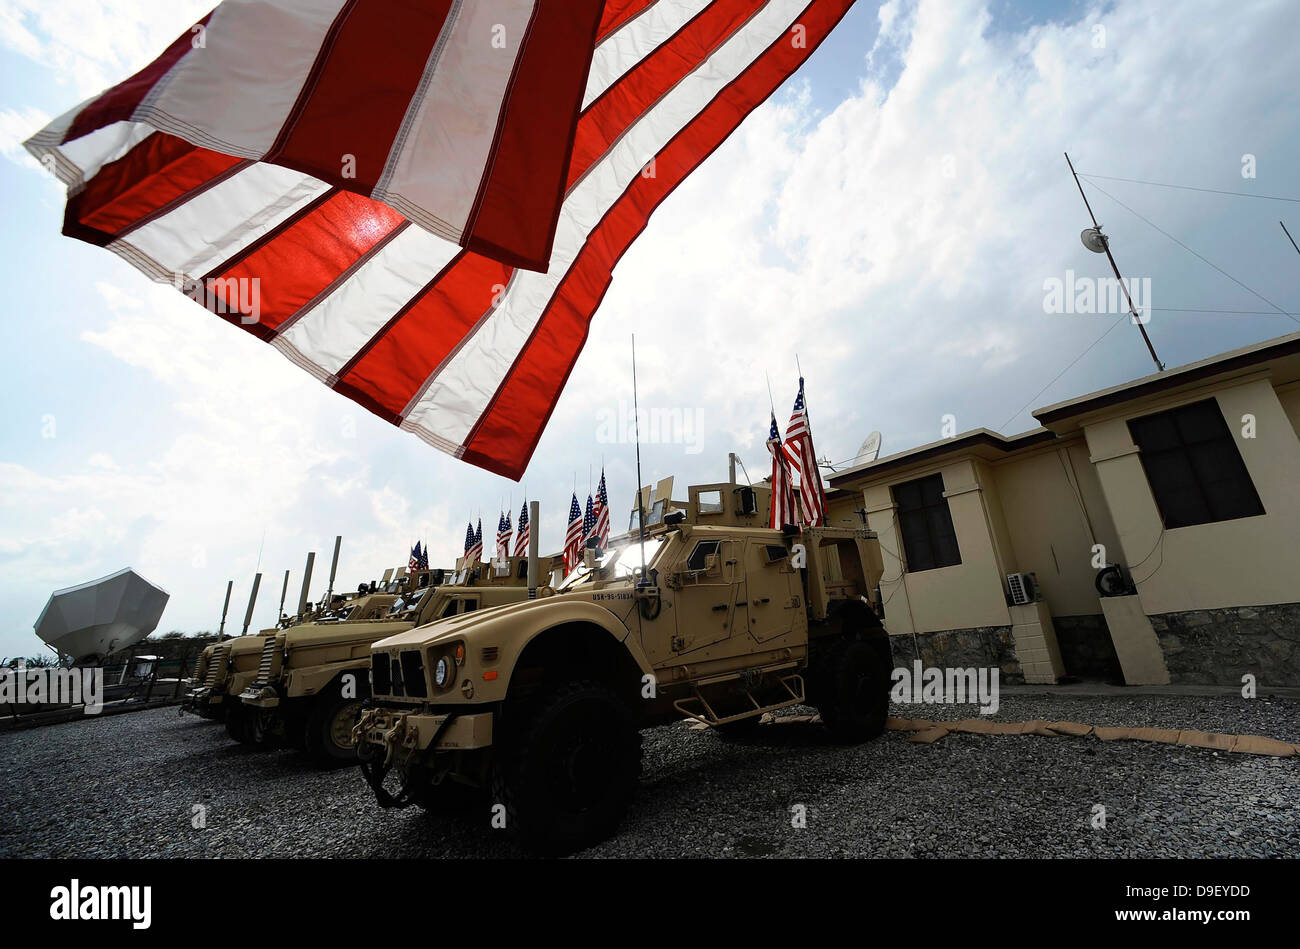 Amerikanische Flaggen werden auf taktische Fahrzeuge im Gedenken an 9/11 angezeigt. Stockfoto